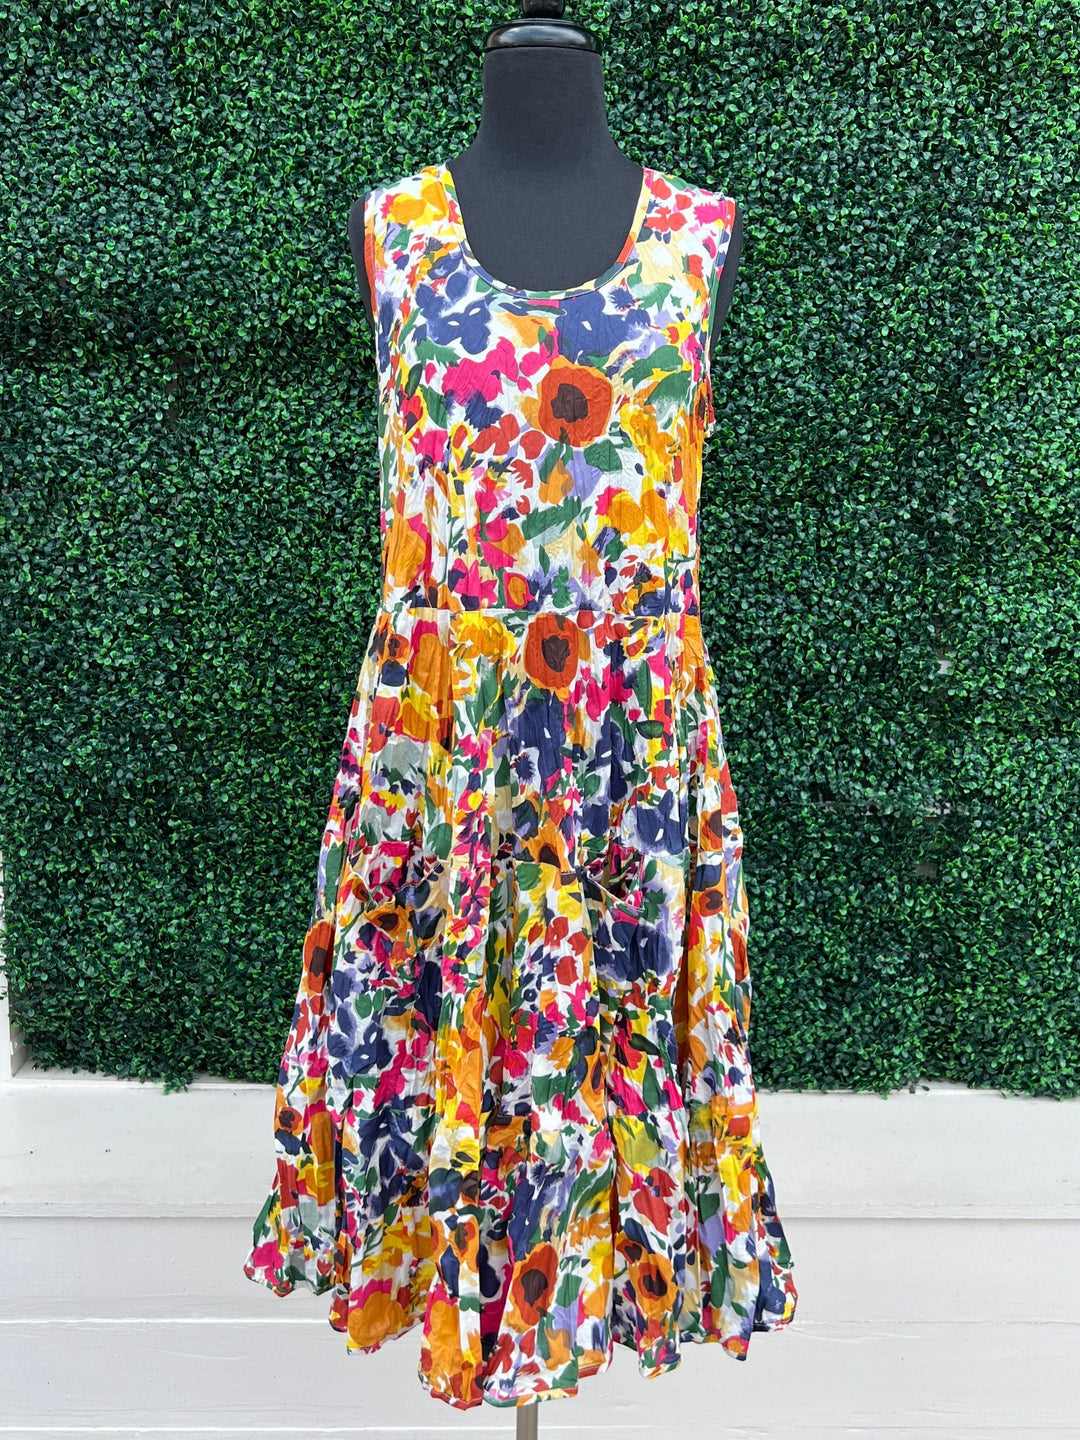 dress addict cotton colorful prints dresses boutique tres chic- floral bright